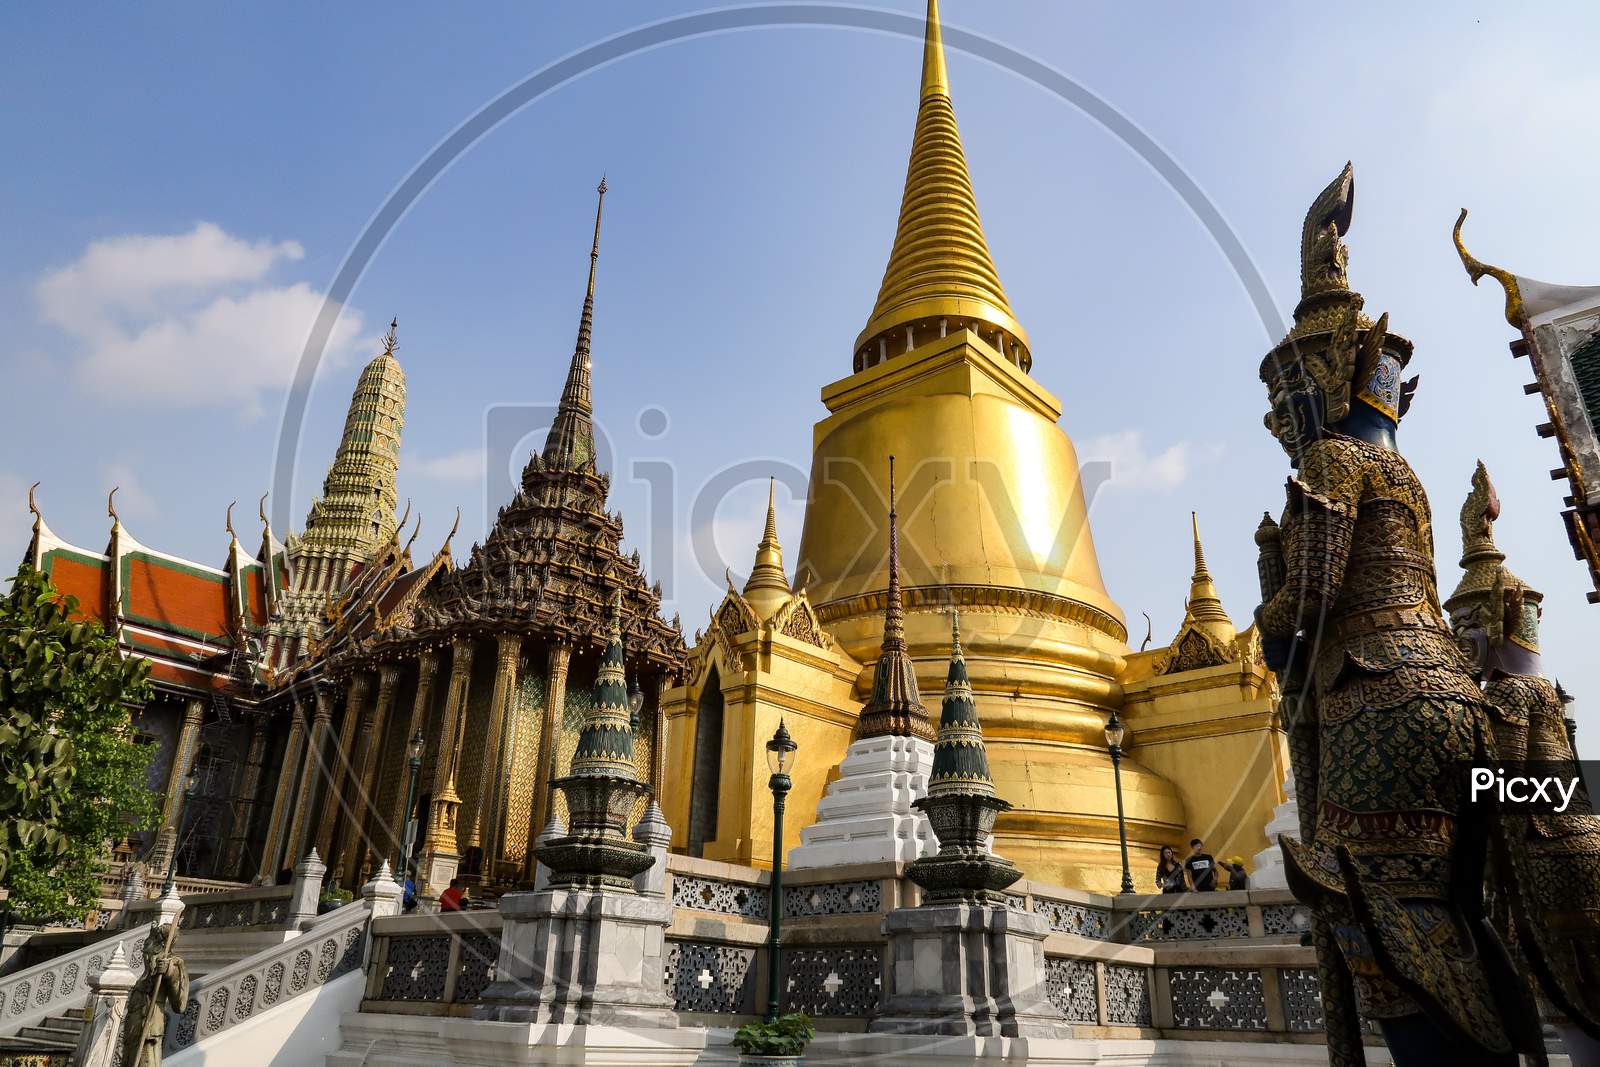 The Great Grand Palace of Bangkok